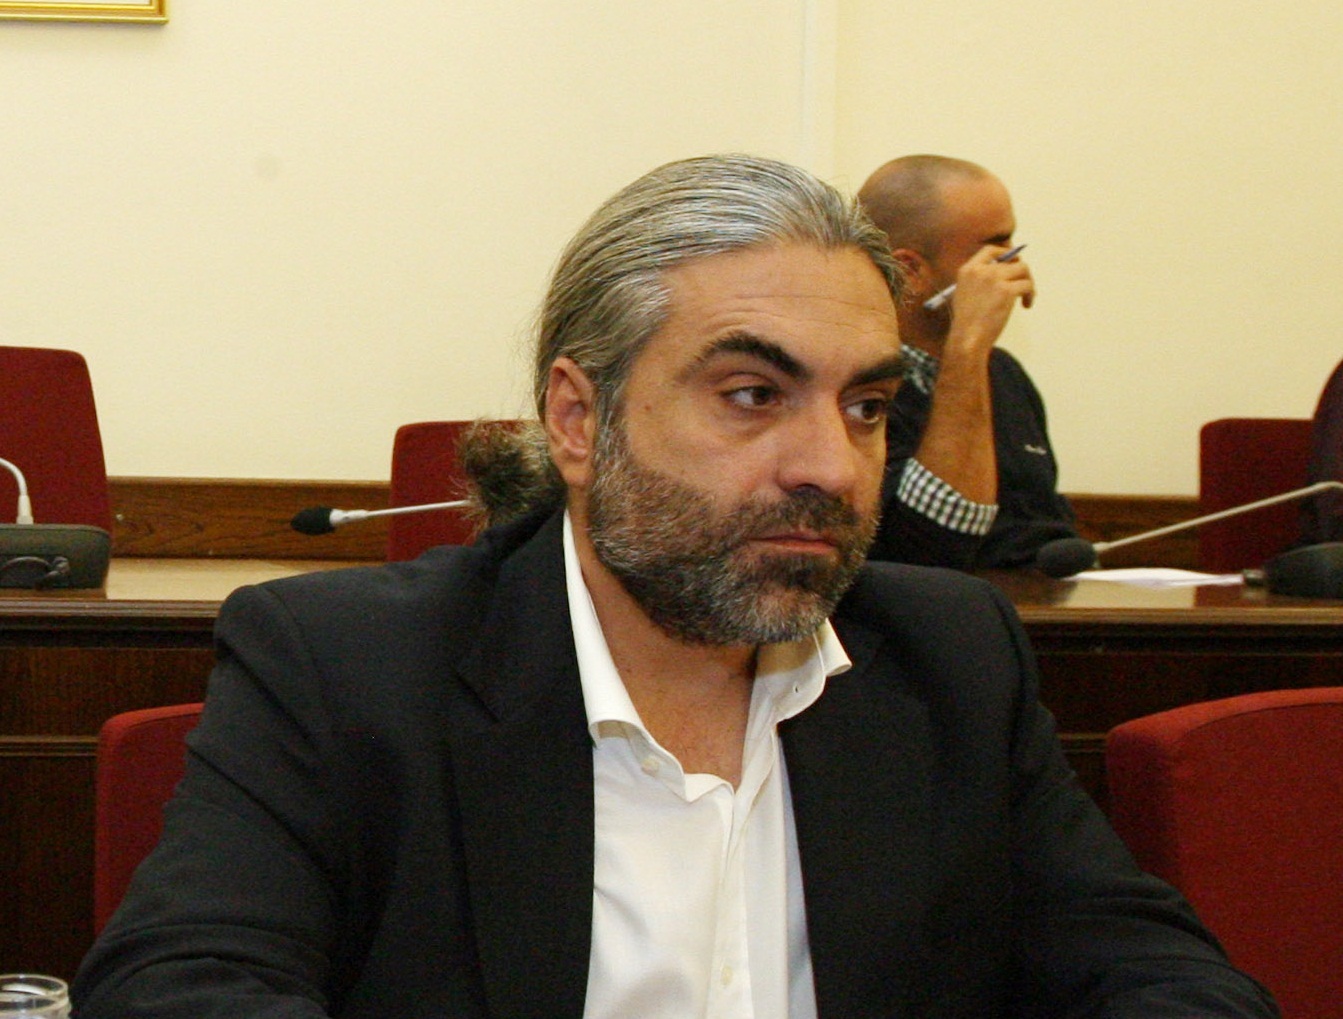 Τα ”βρόντηξε” και ανεξαρτητοποιήθηκε ο βουλευτής της Χρυσής Αυγής Χ. Αλεξόπουλος